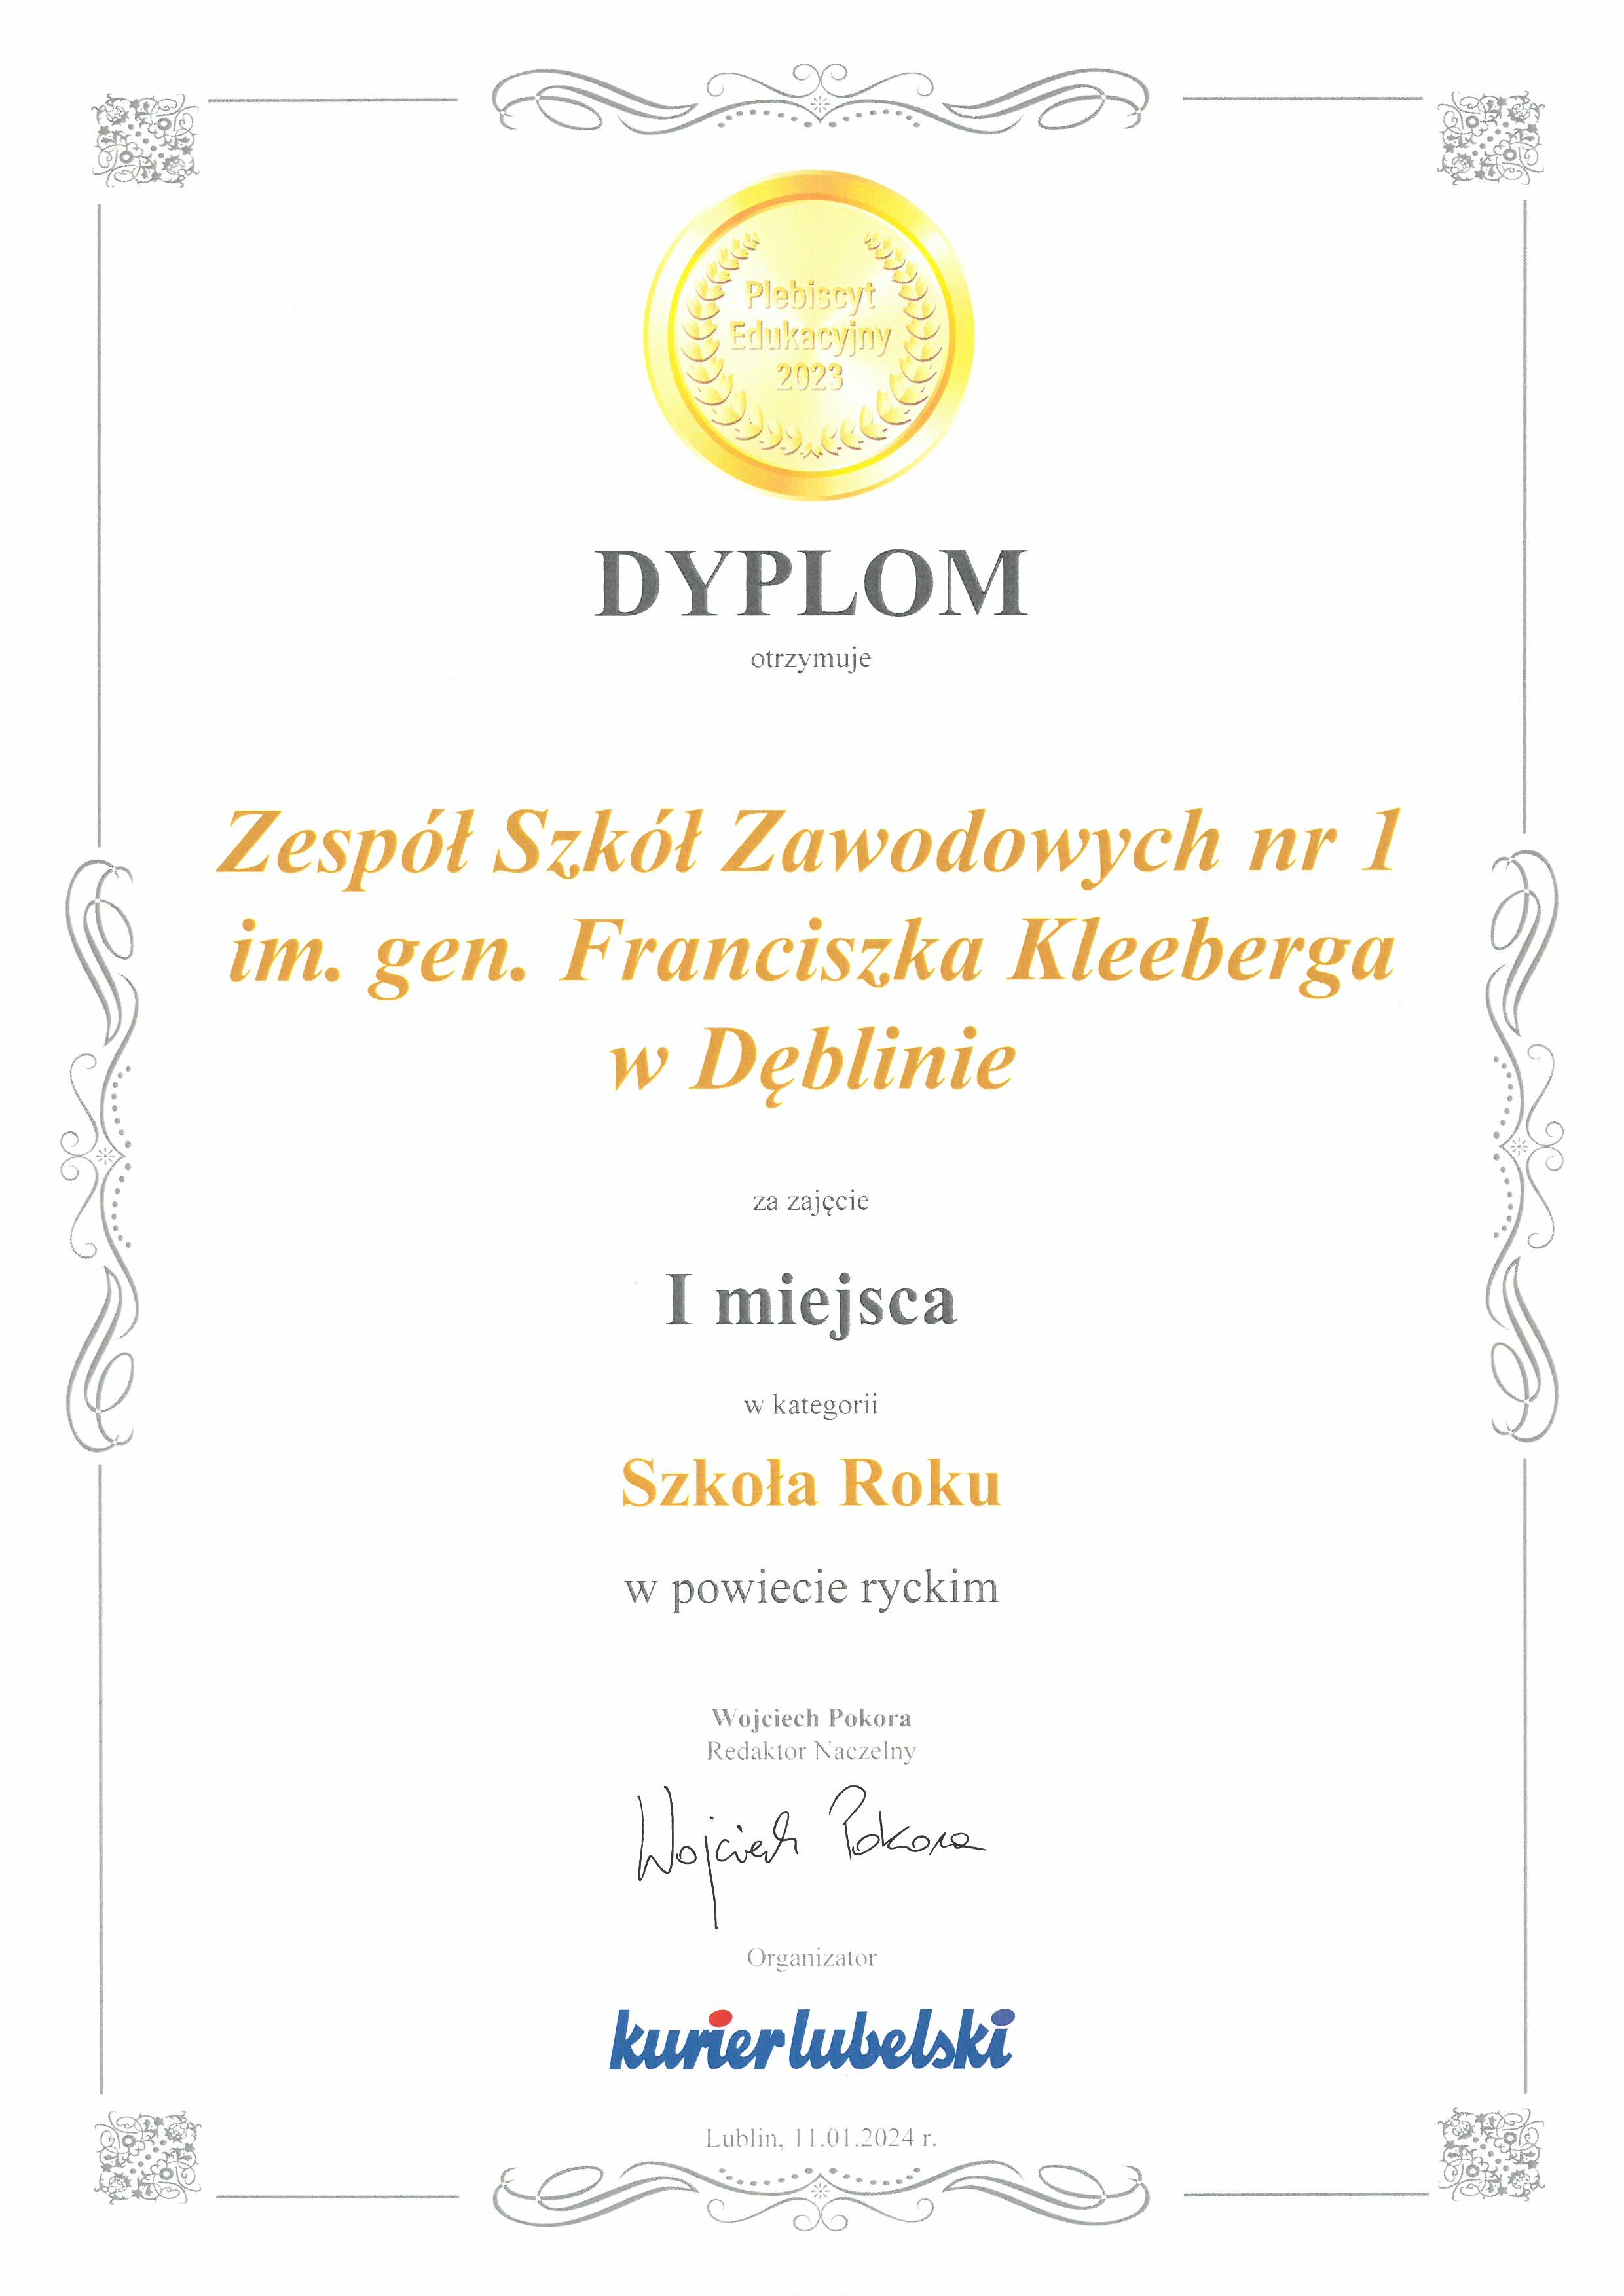 Zdjęcie dyplomu z złotymi zdobieniami, zawierającego tekst